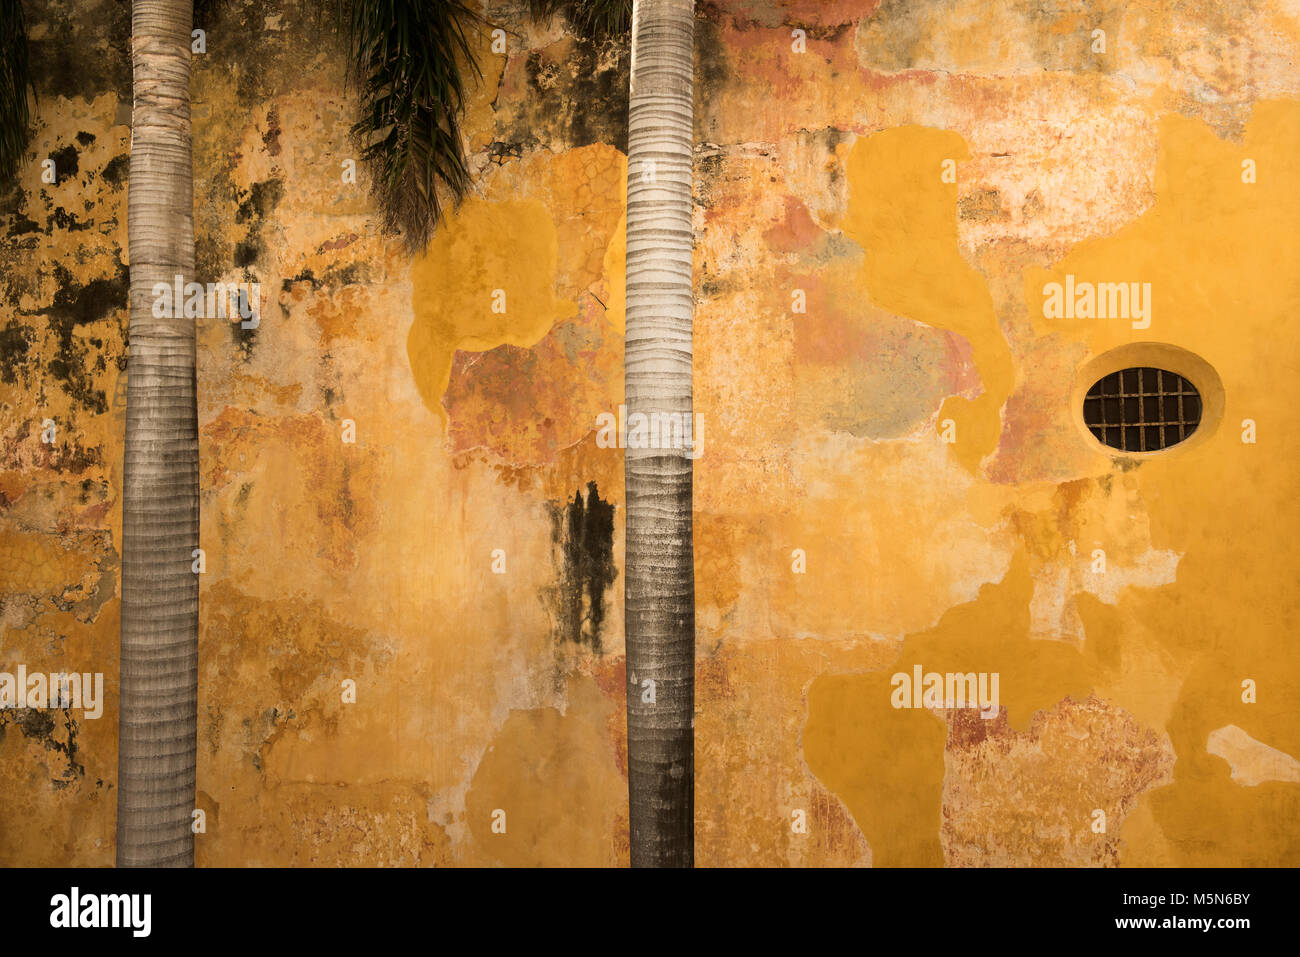 Atractivo angustiado mirando la pared con troncos de árboles de palma creando una imagen abstracta Foto de stock